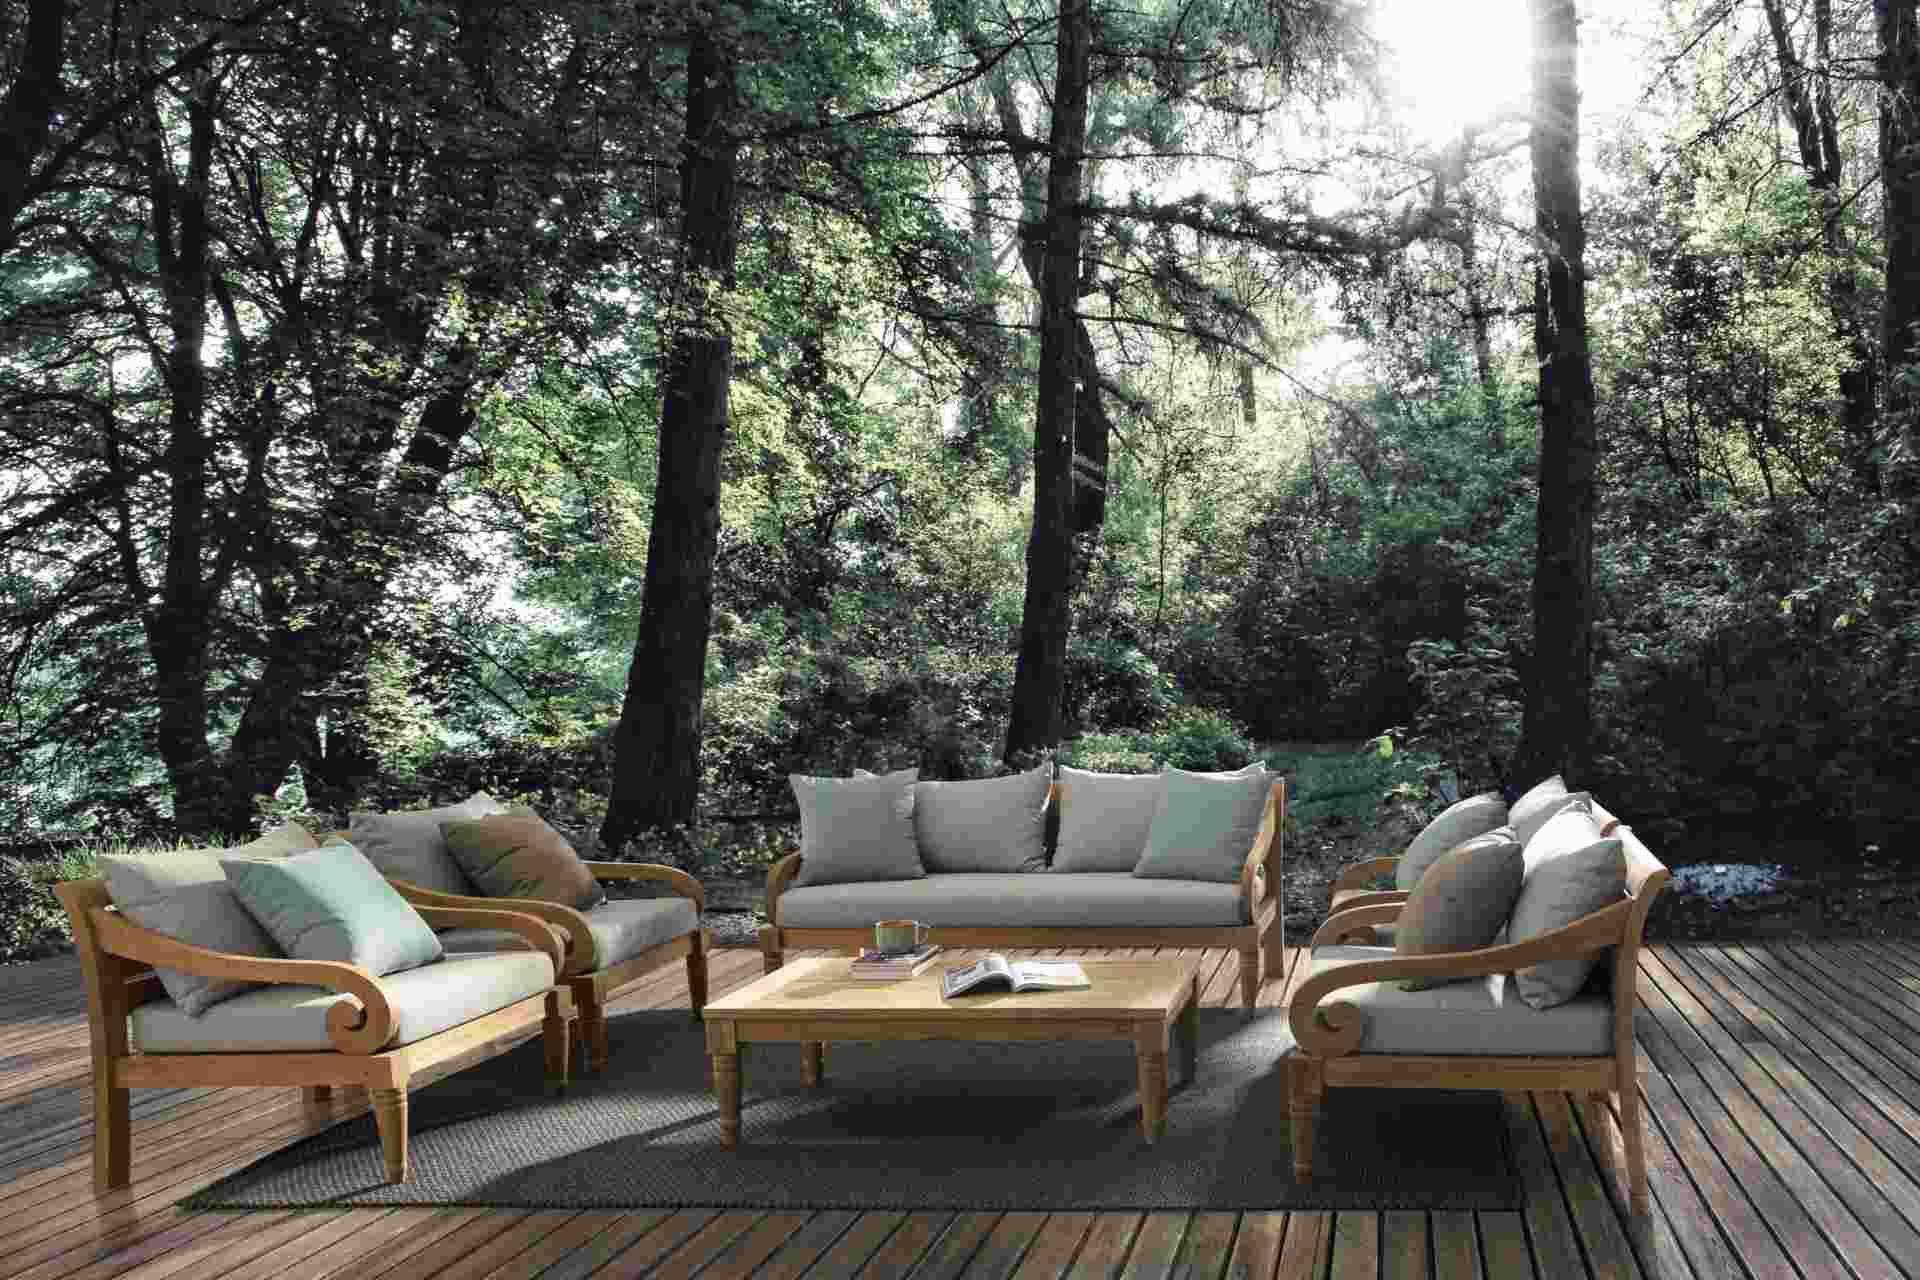 Der Gartensessel Karuba überzeugt mit seinem klassischen Design. Gefertigt wurde er aus Teakholz, welche einen natürlichen Farbton besitzt. Die Kissen und Auflagen haben eine hellgraue Farbe. Der Sessel verfügt über eine Sitzhöhe von 42 cm und ist für den